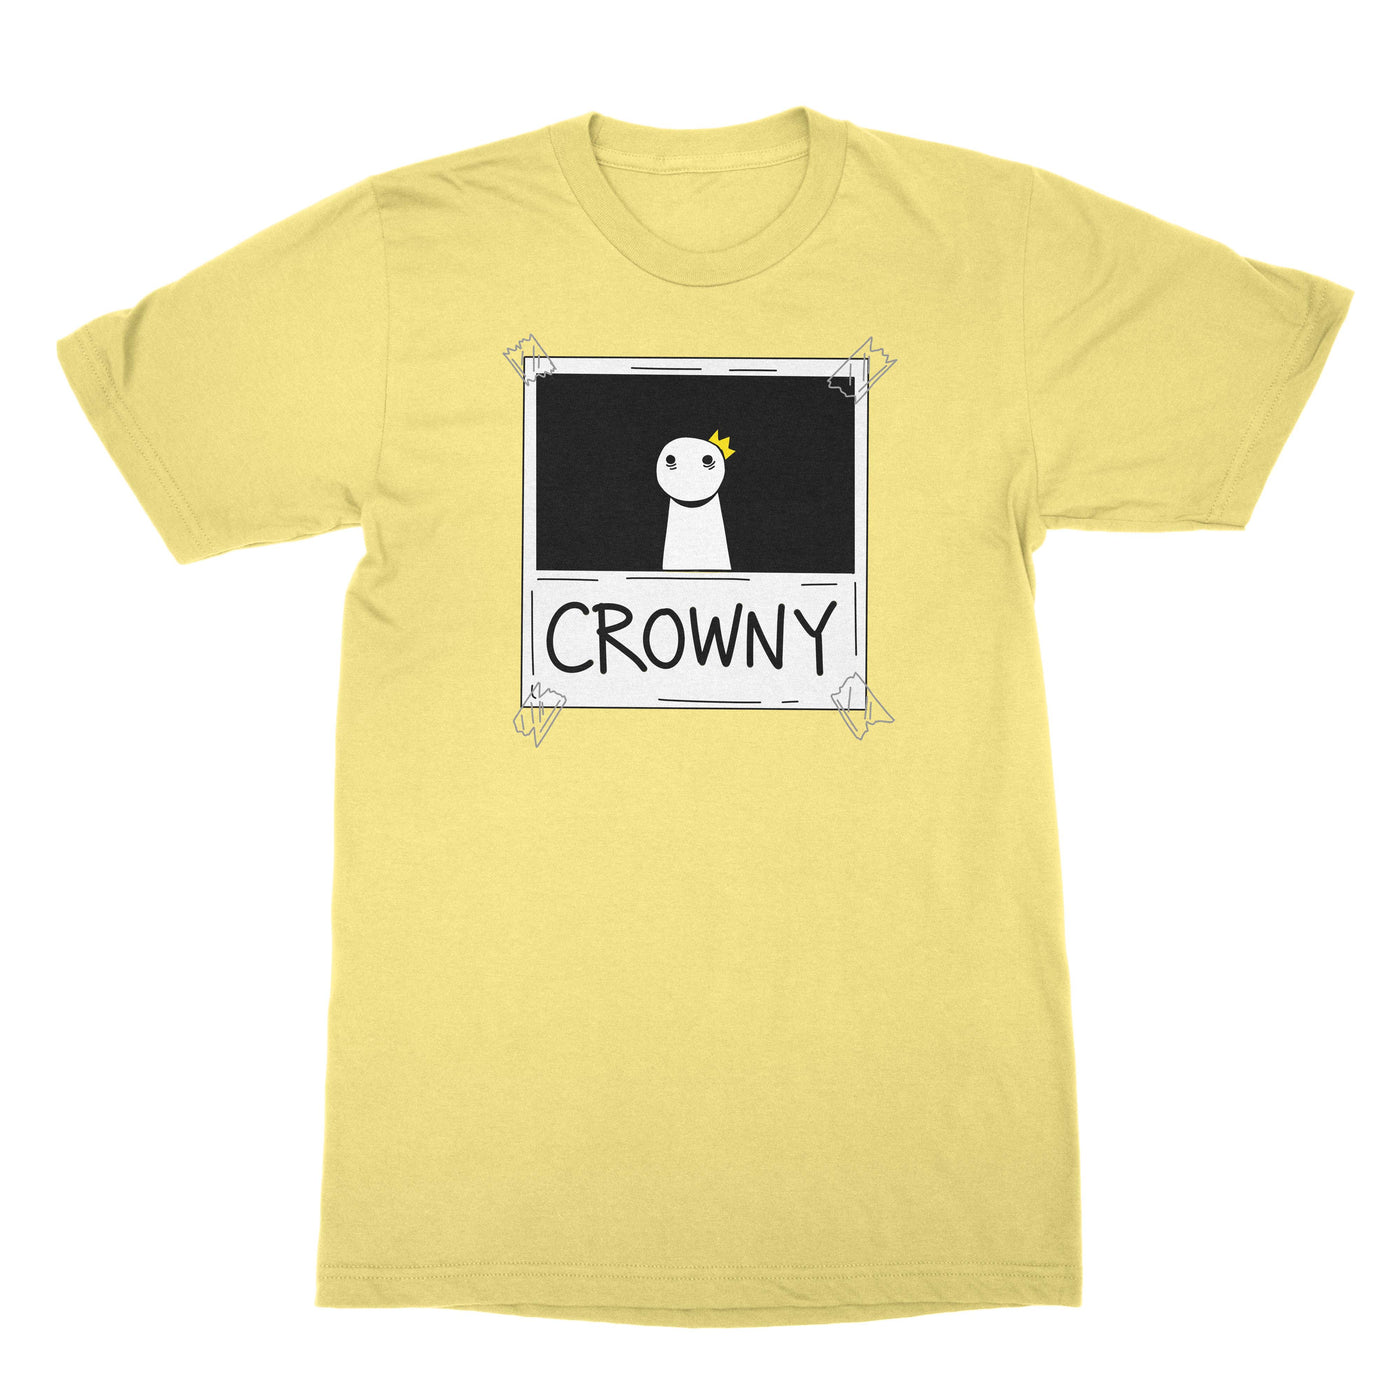 Crowny - Unisex Shirt Banana Cream